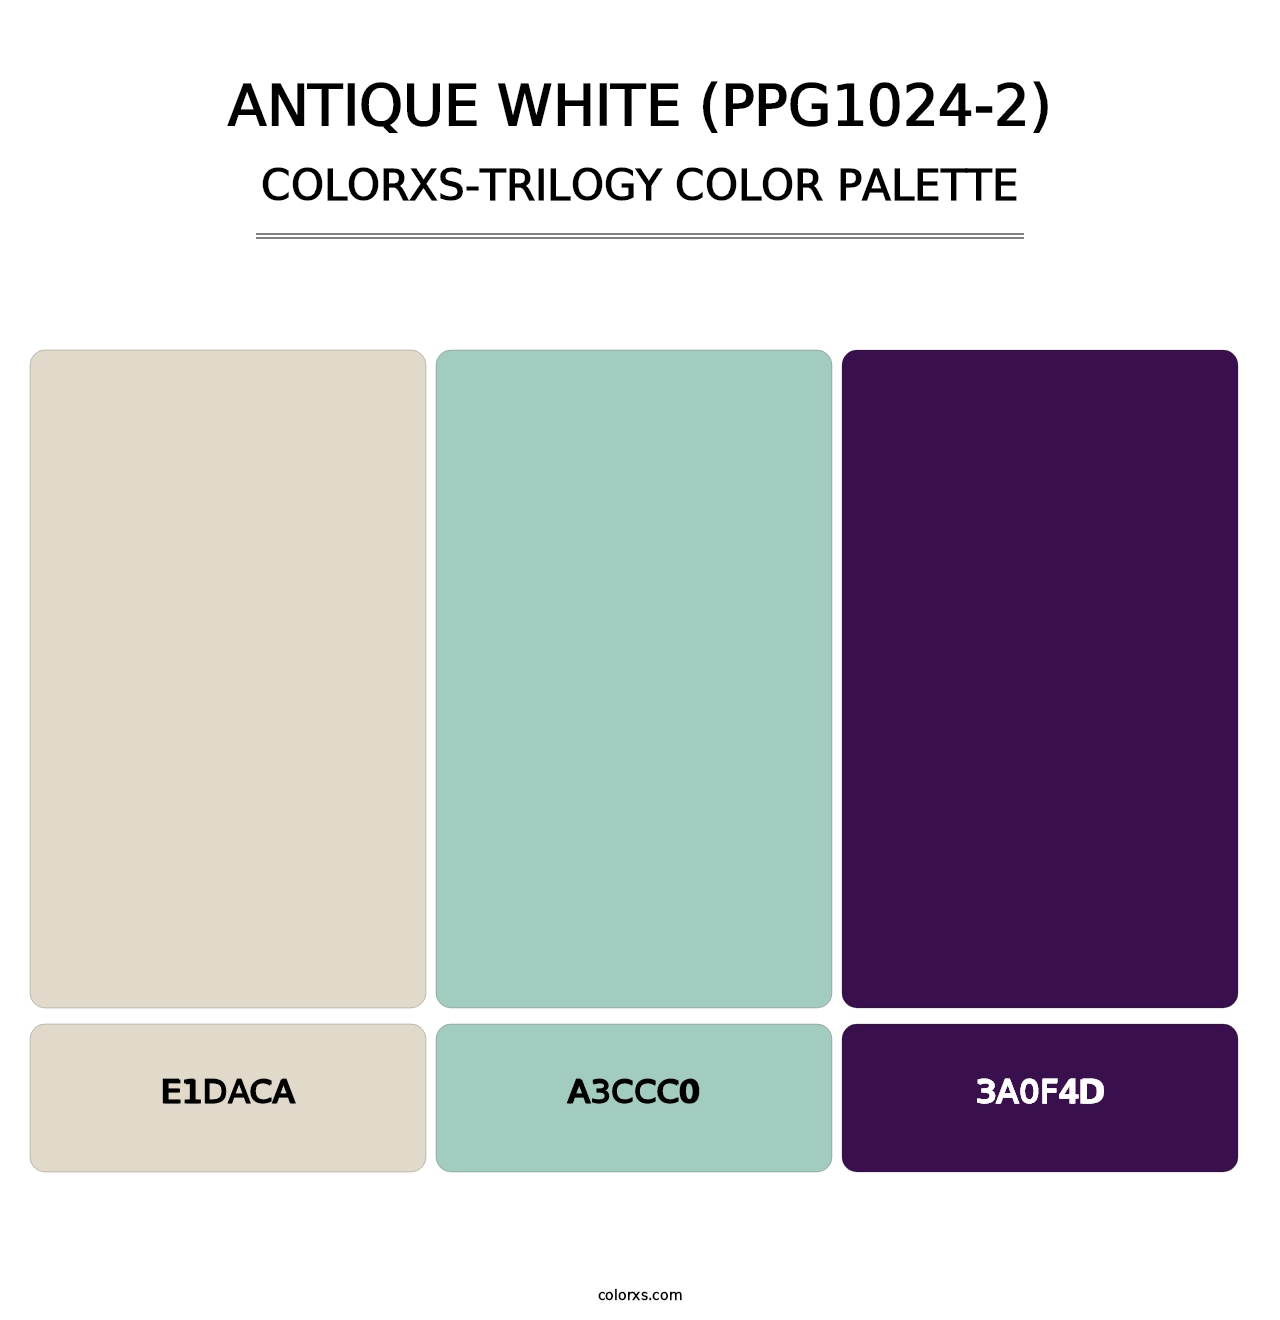 Antique White (PPG1024-2) - Colorxs Trilogy Palette